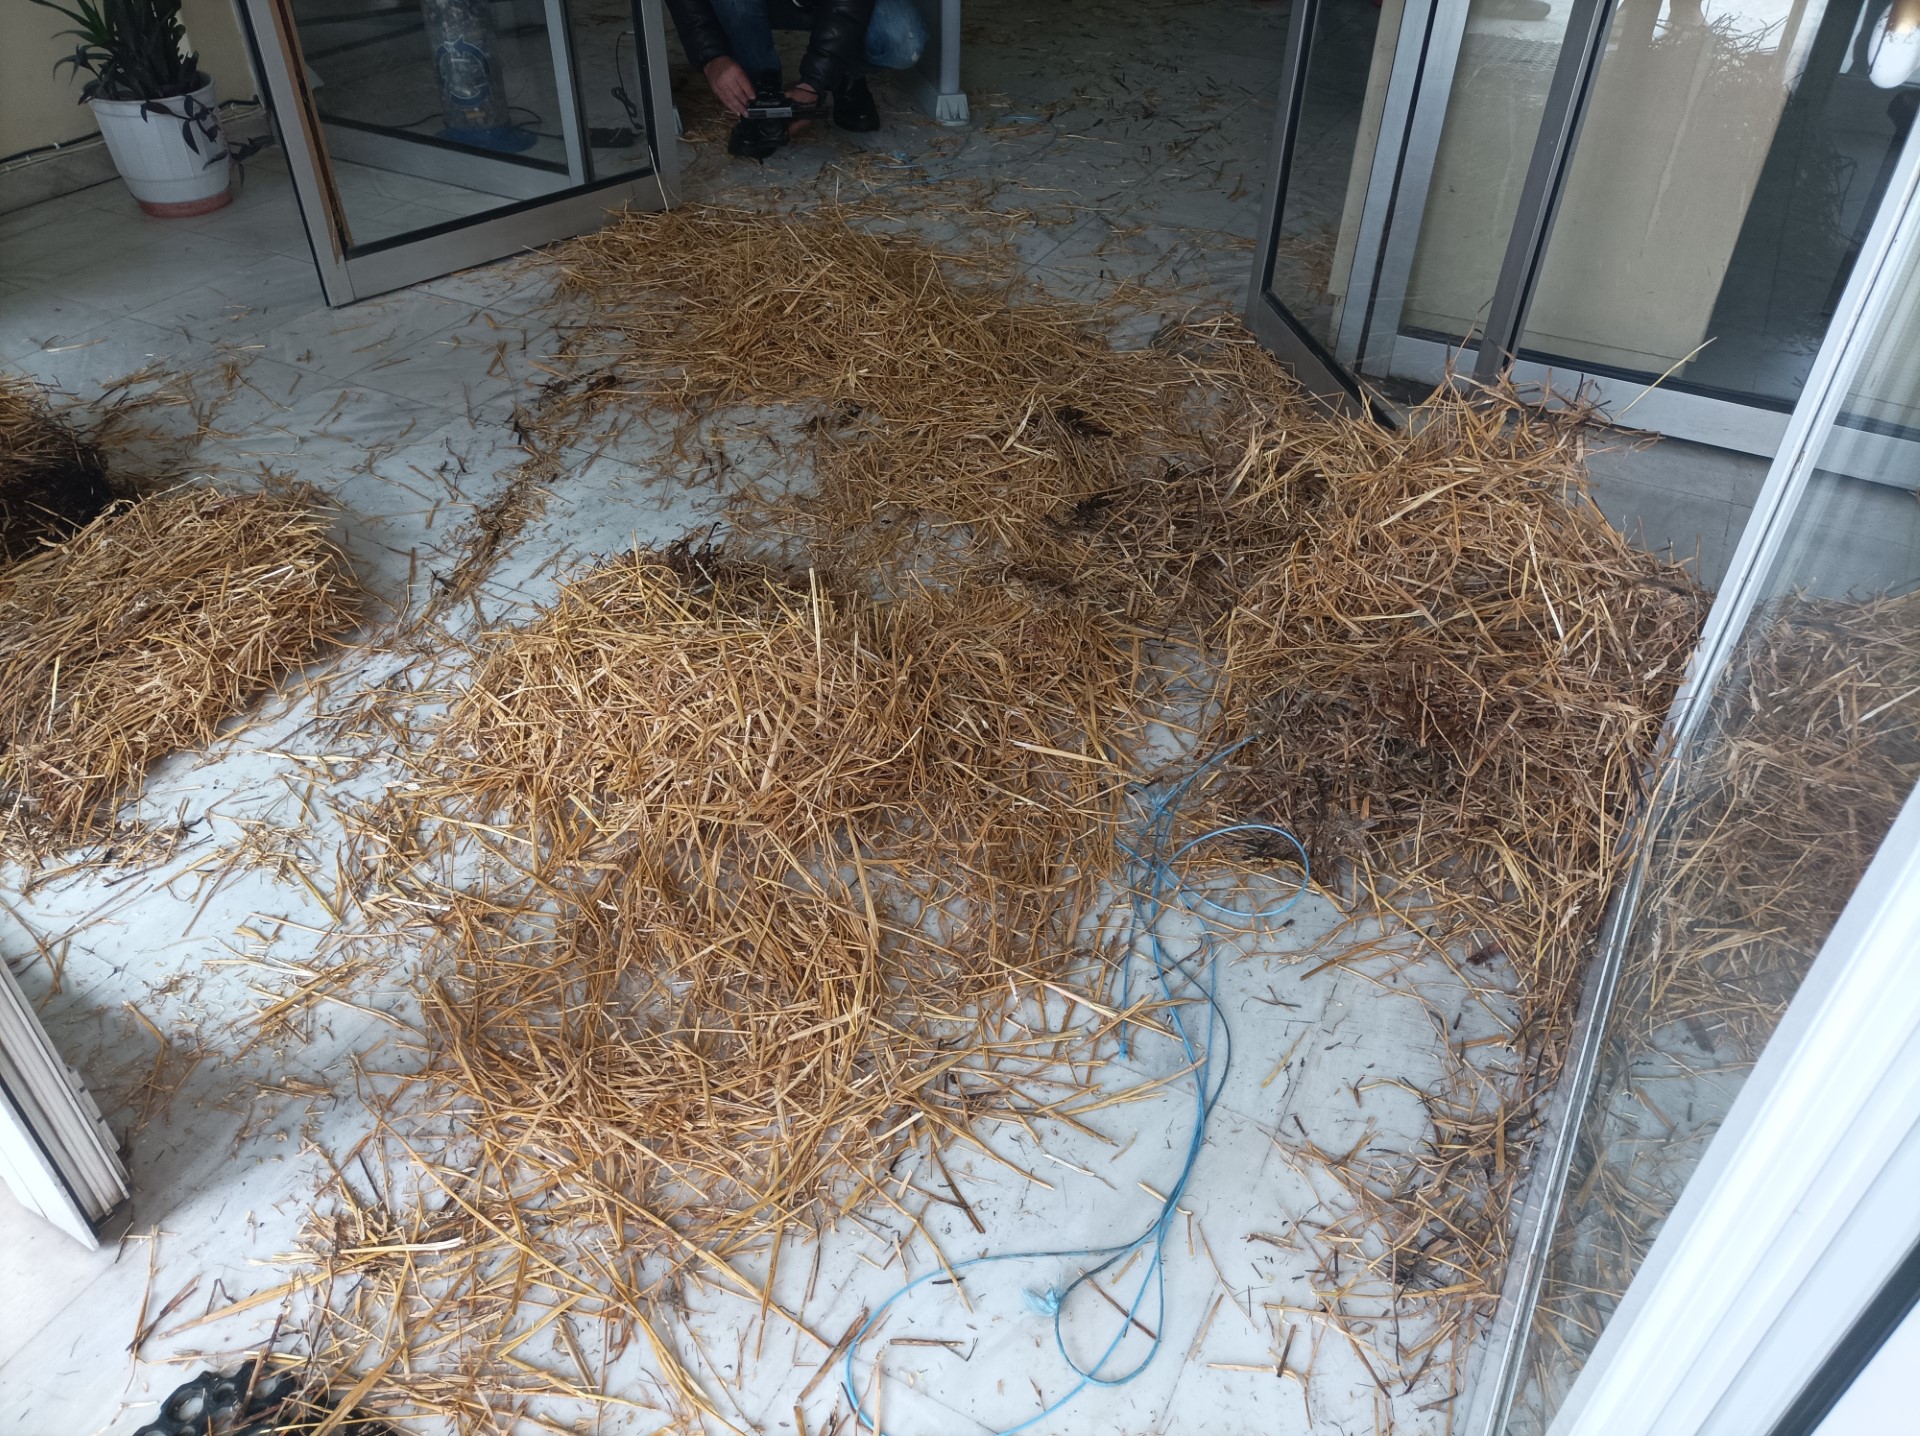 Λάρισα: Οι αγρότες απέκλεισαν το Τελωνείο με τρακτέρ και μπάλες άχυρο